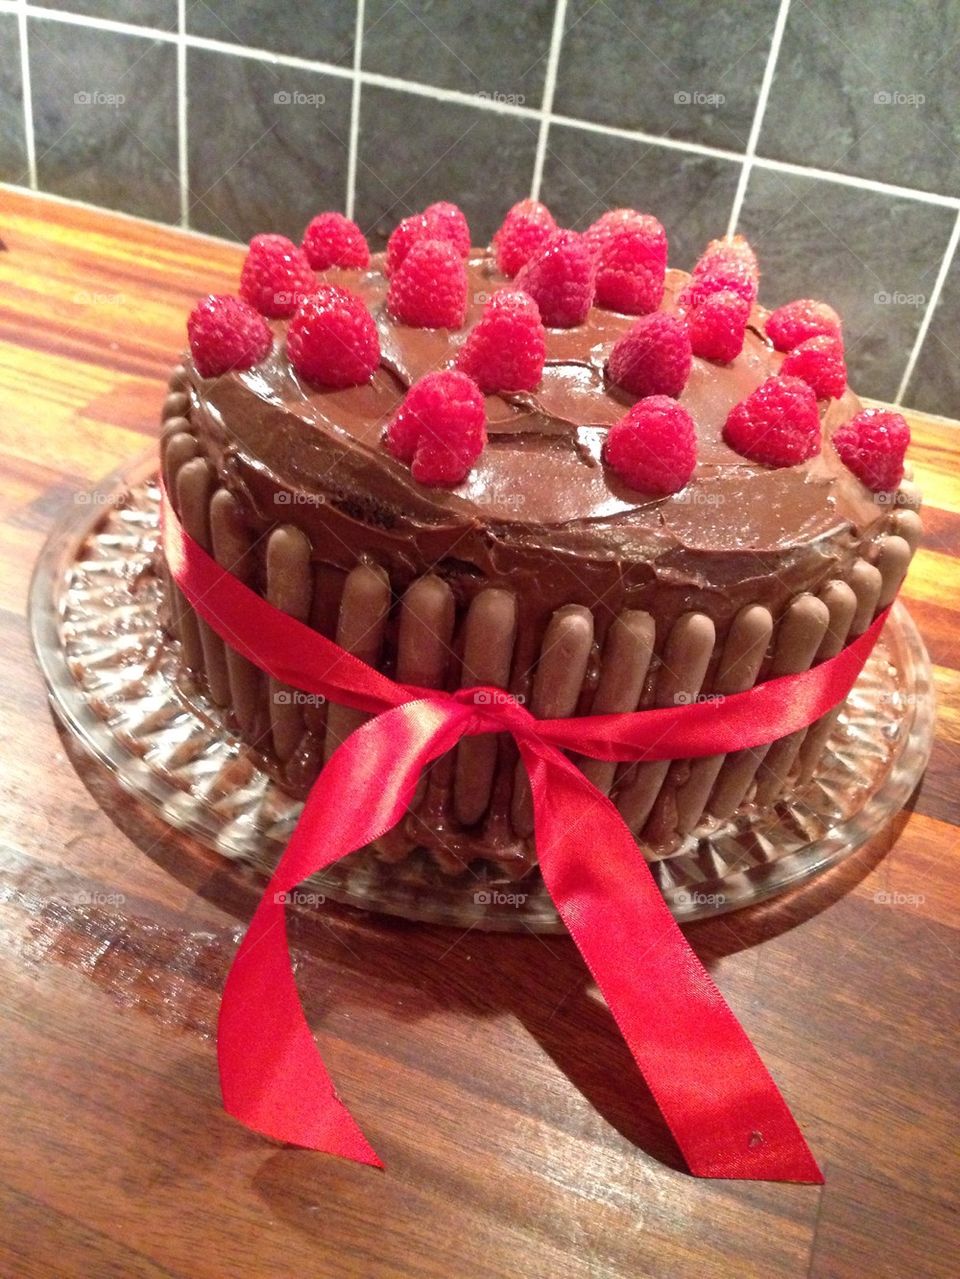 Birthday chocolate cake with raspberries 